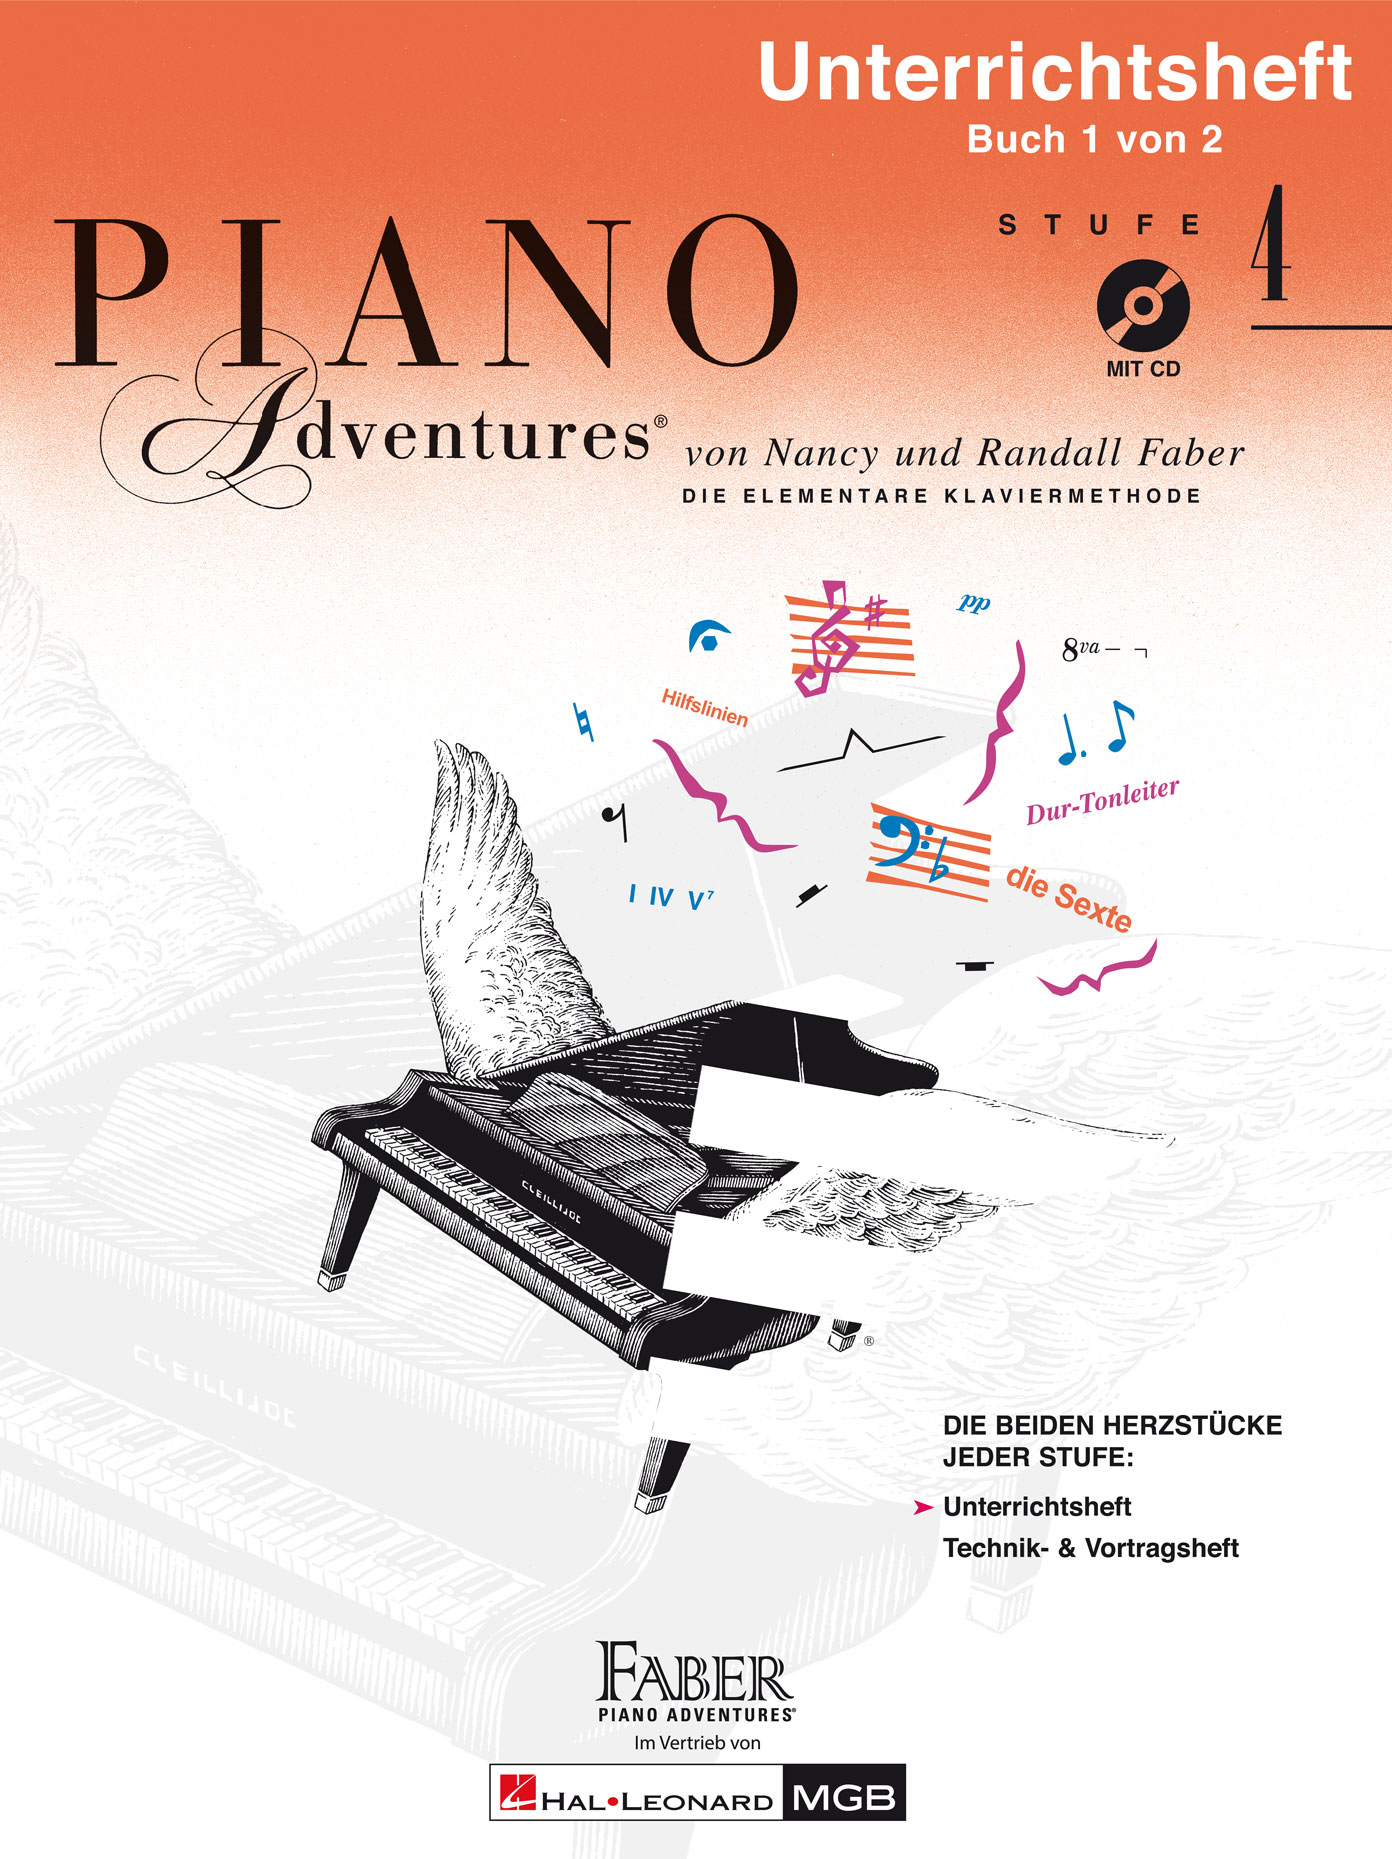 Piano Adventures: Unterrichtsheft 4 (Mit CD) - Buch 1 von 2